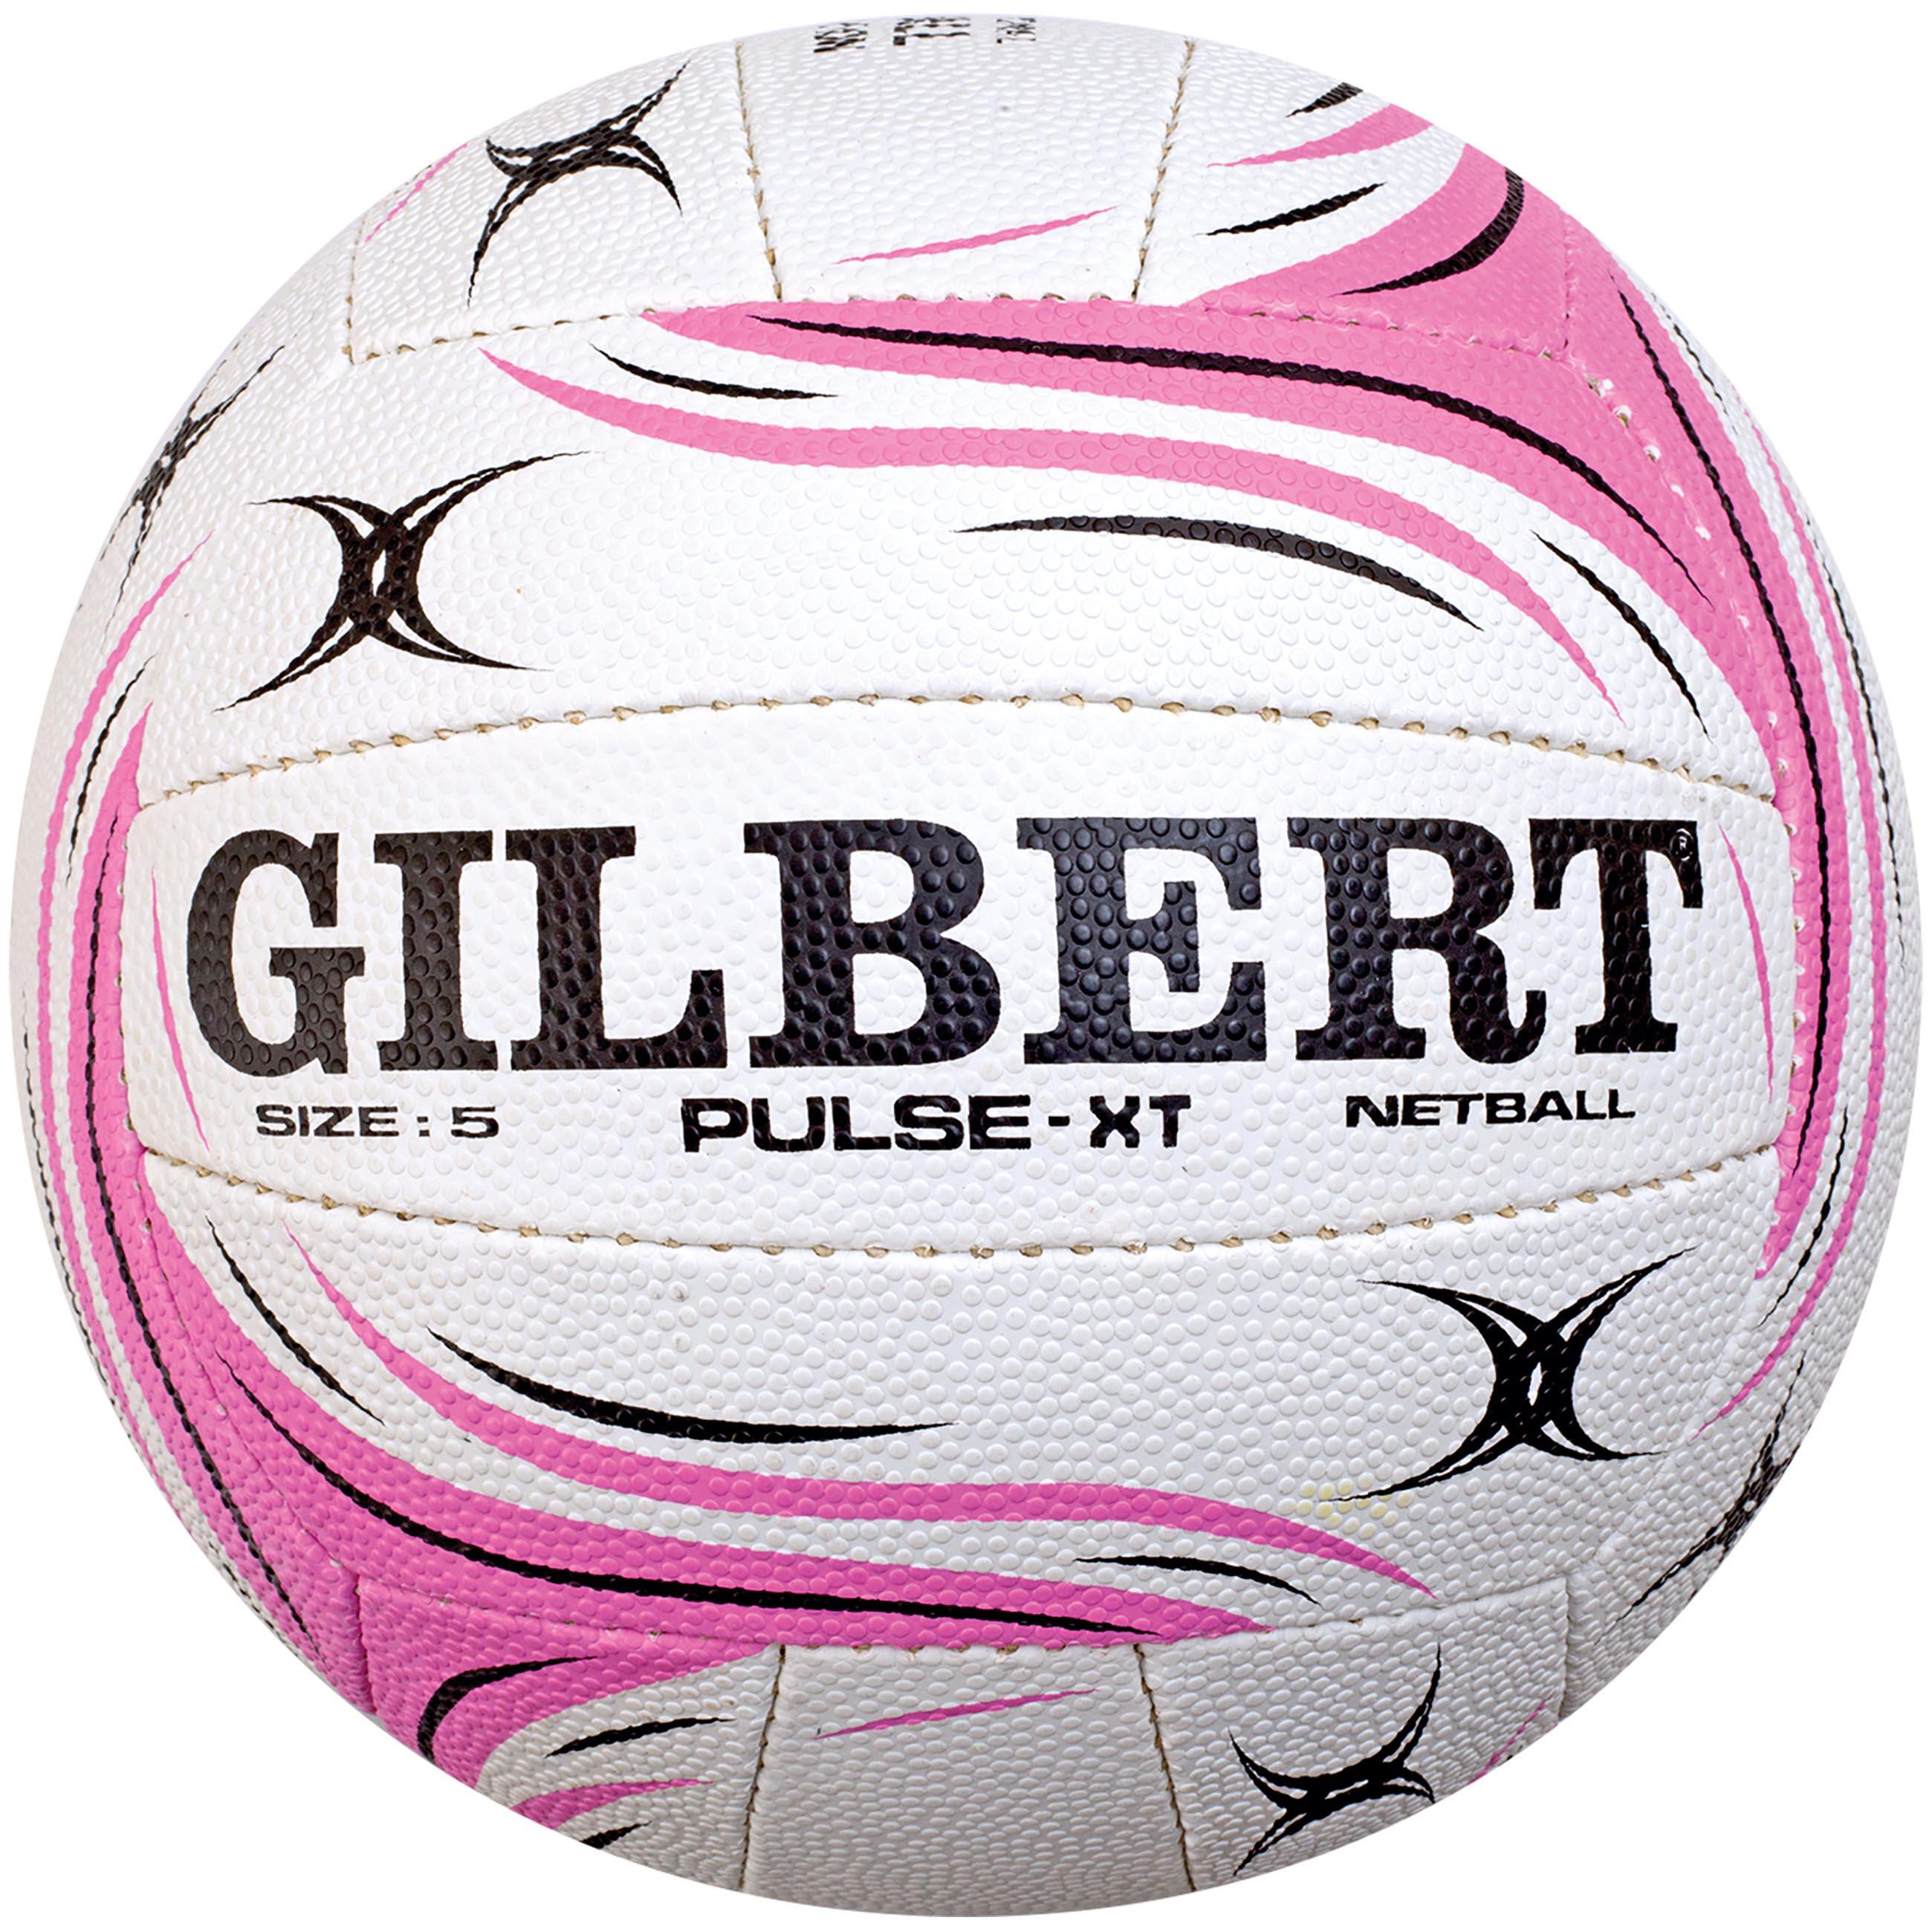 GILBERT Gilbert Netball Pulse XT Size 5